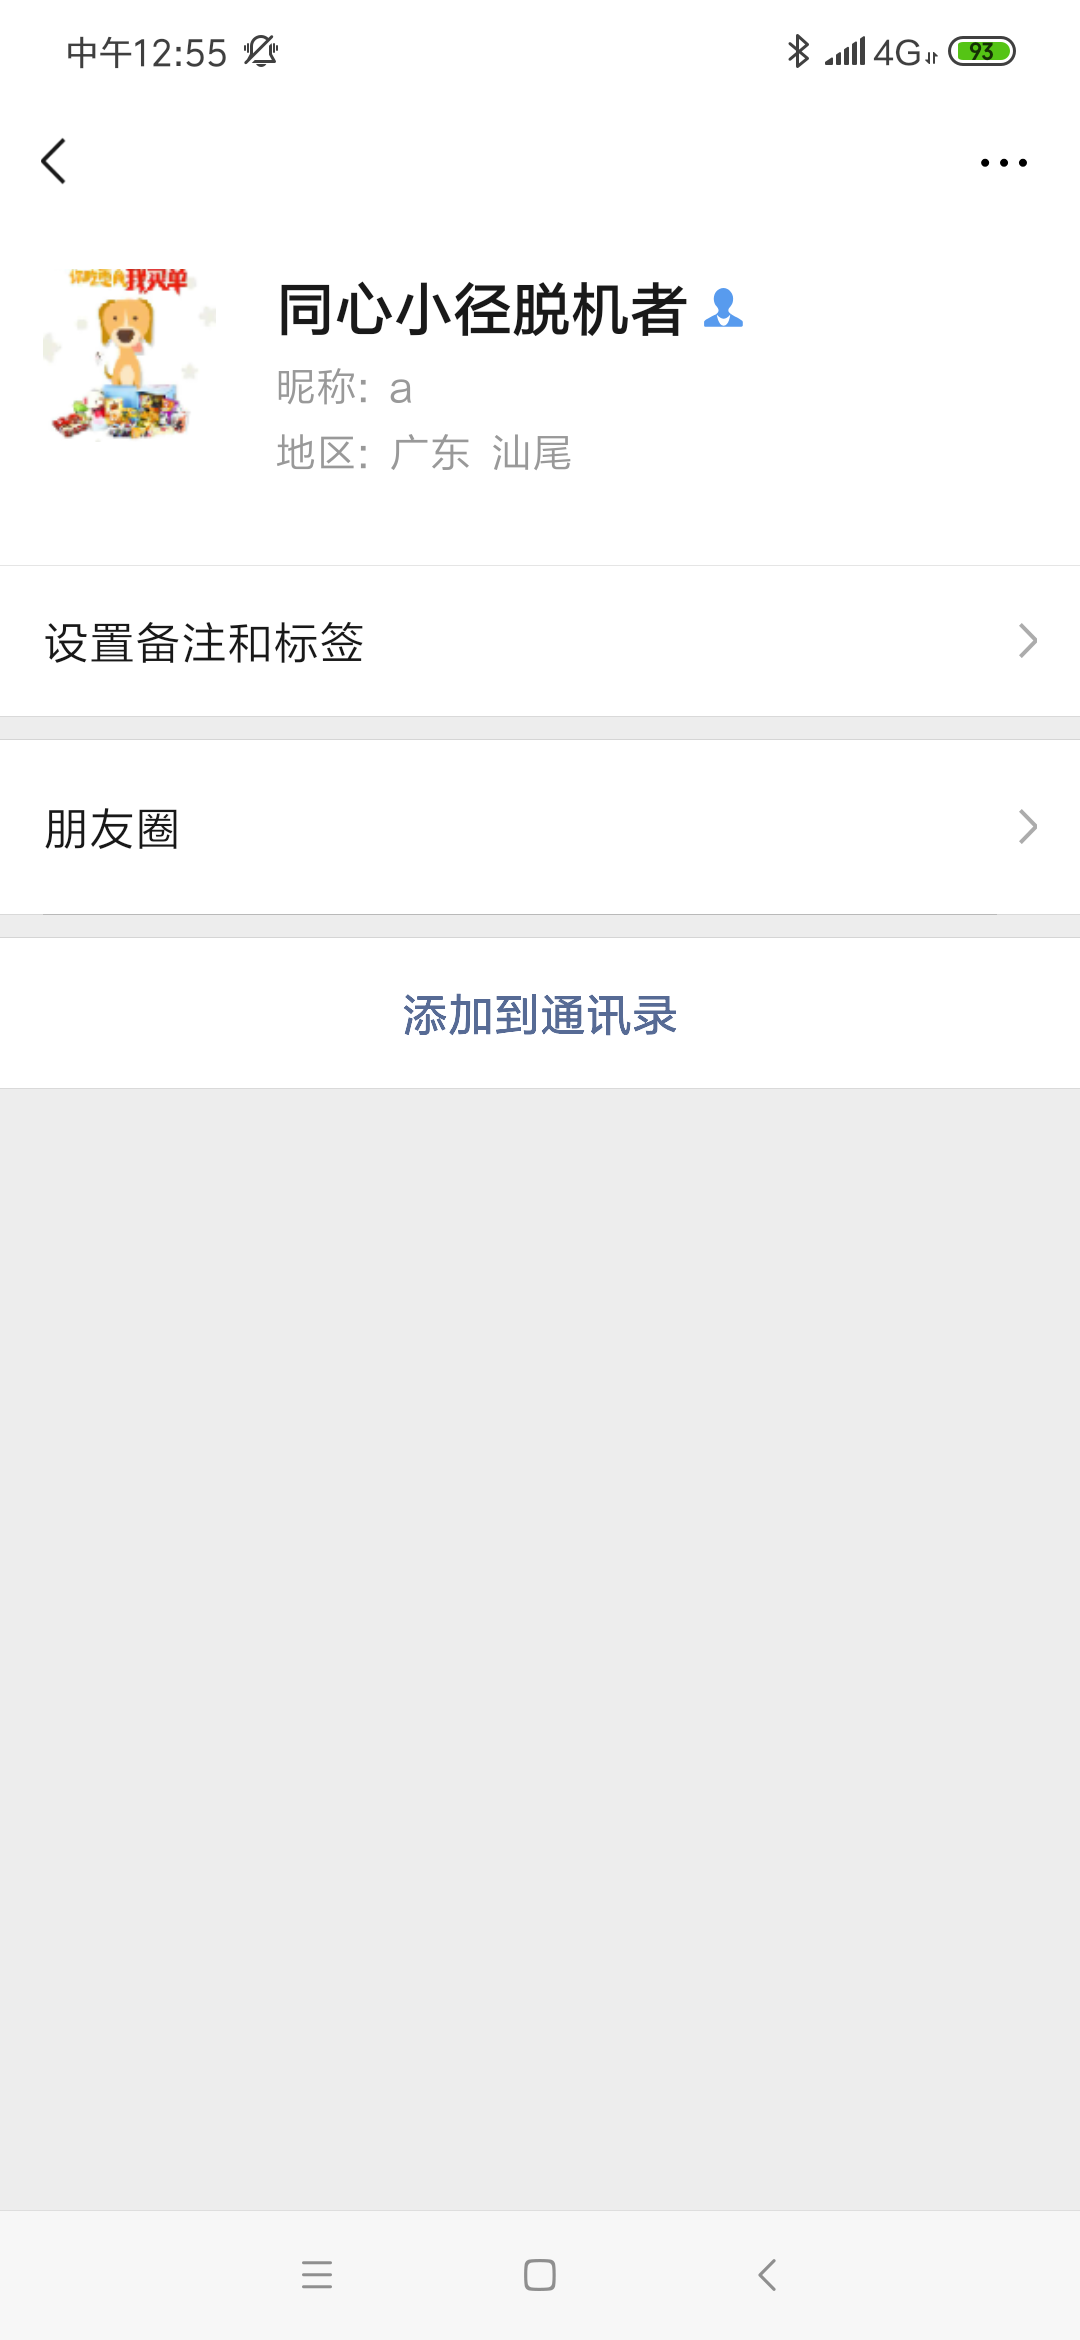 Screenshot_2019-12-19-12-55-15-463_com.tencent.mm.png